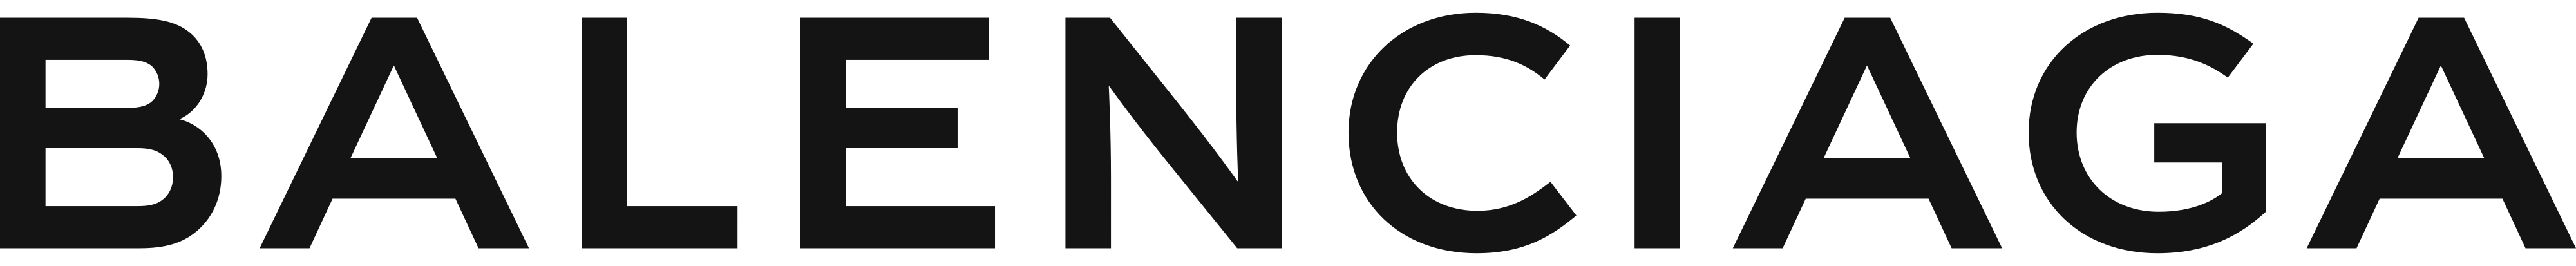 Balenciaga logo - download.